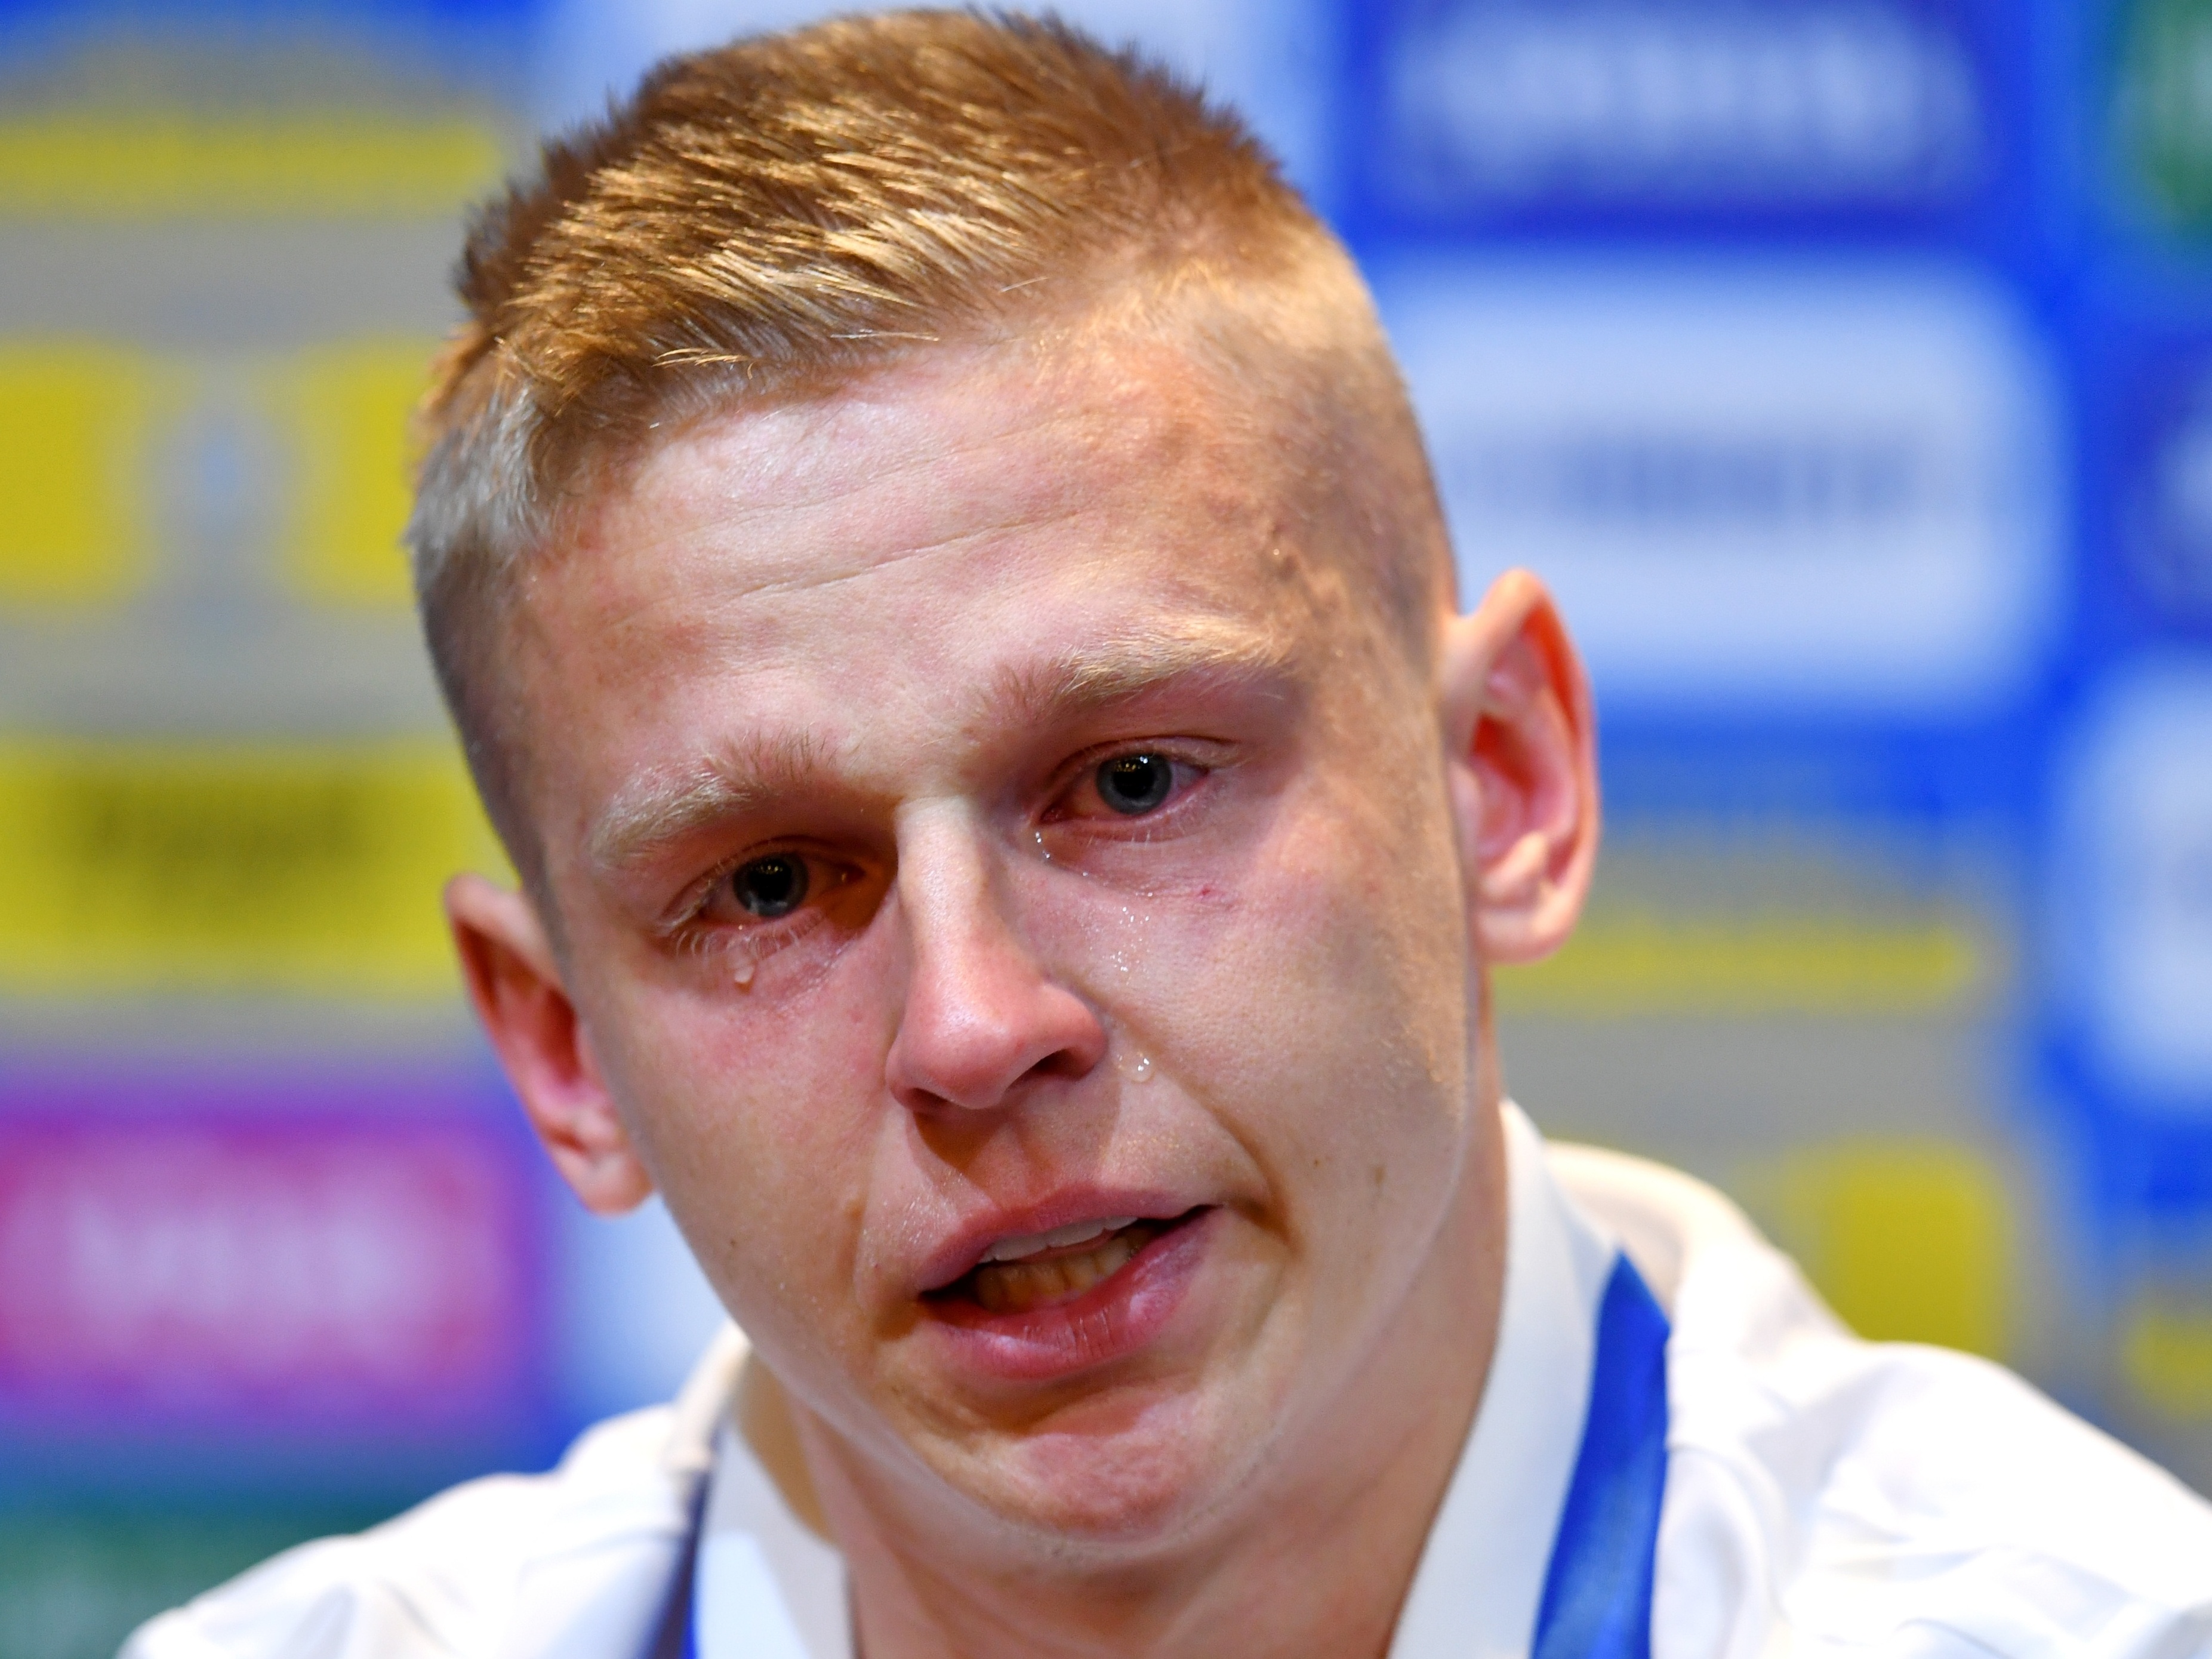 Futebolista polaco excluído da seleção e do Mundial 2022 - SIC